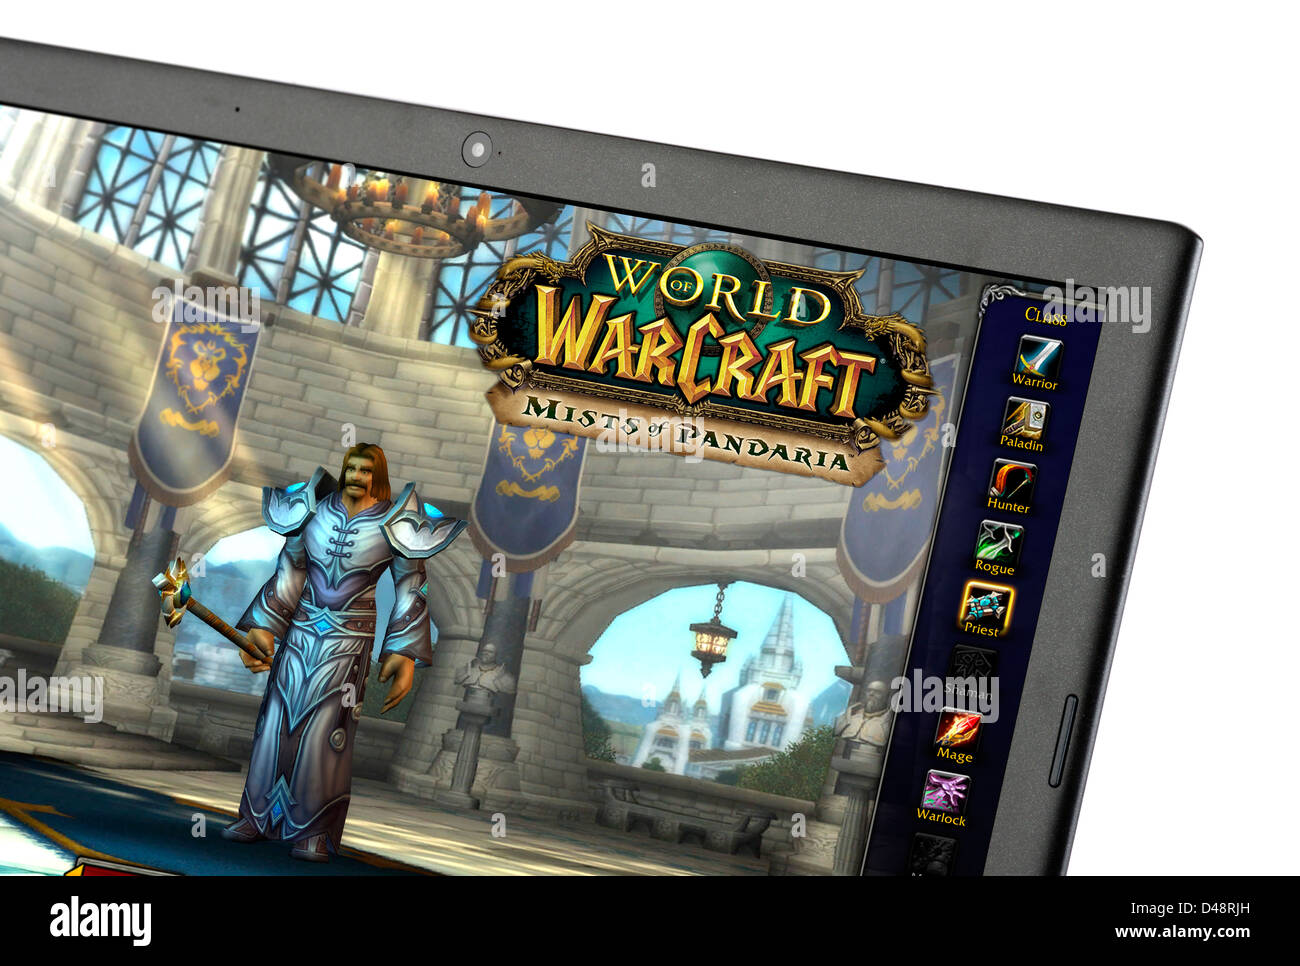 Die beliebte "World of Warcraft: Mists of Pandaria" Multiplayer-Online-Rollenspiel (MMORPG) auf einem Laptopcomputer Stockfoto